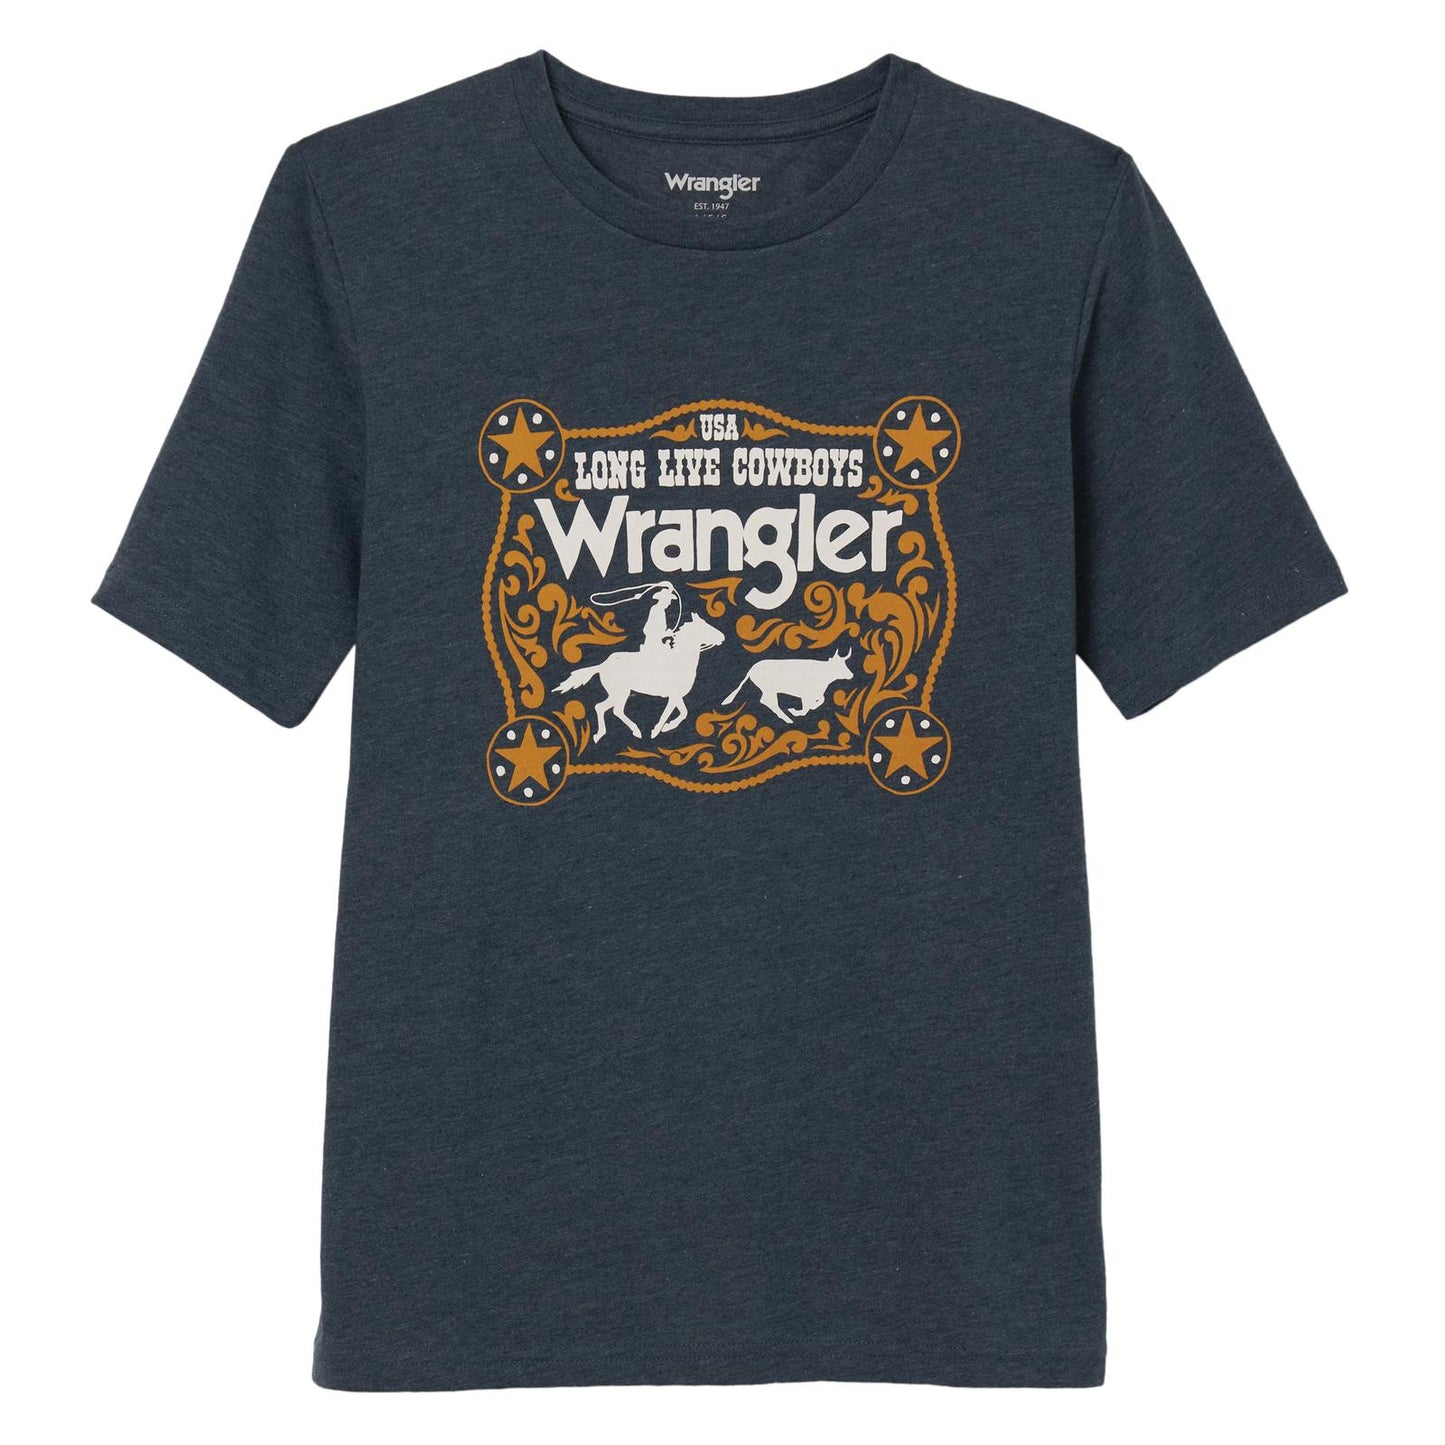 Wrangler Boys T shirt